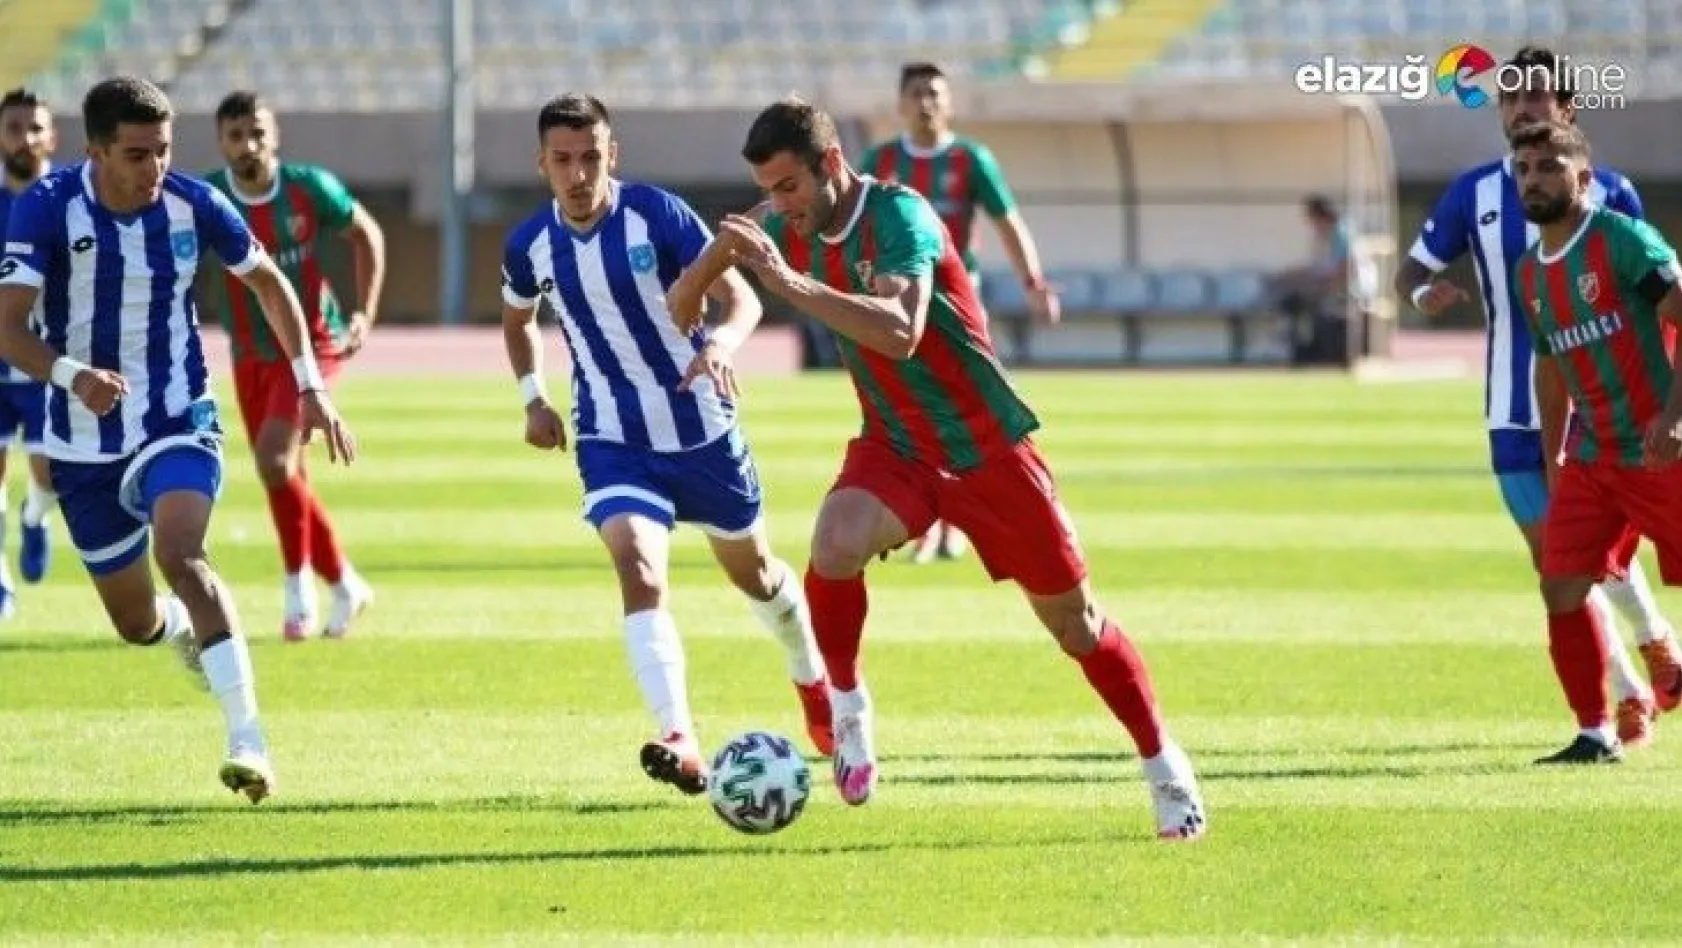 Elazığ Karakoçan Futbol Kulübü de Mağlup Oldu